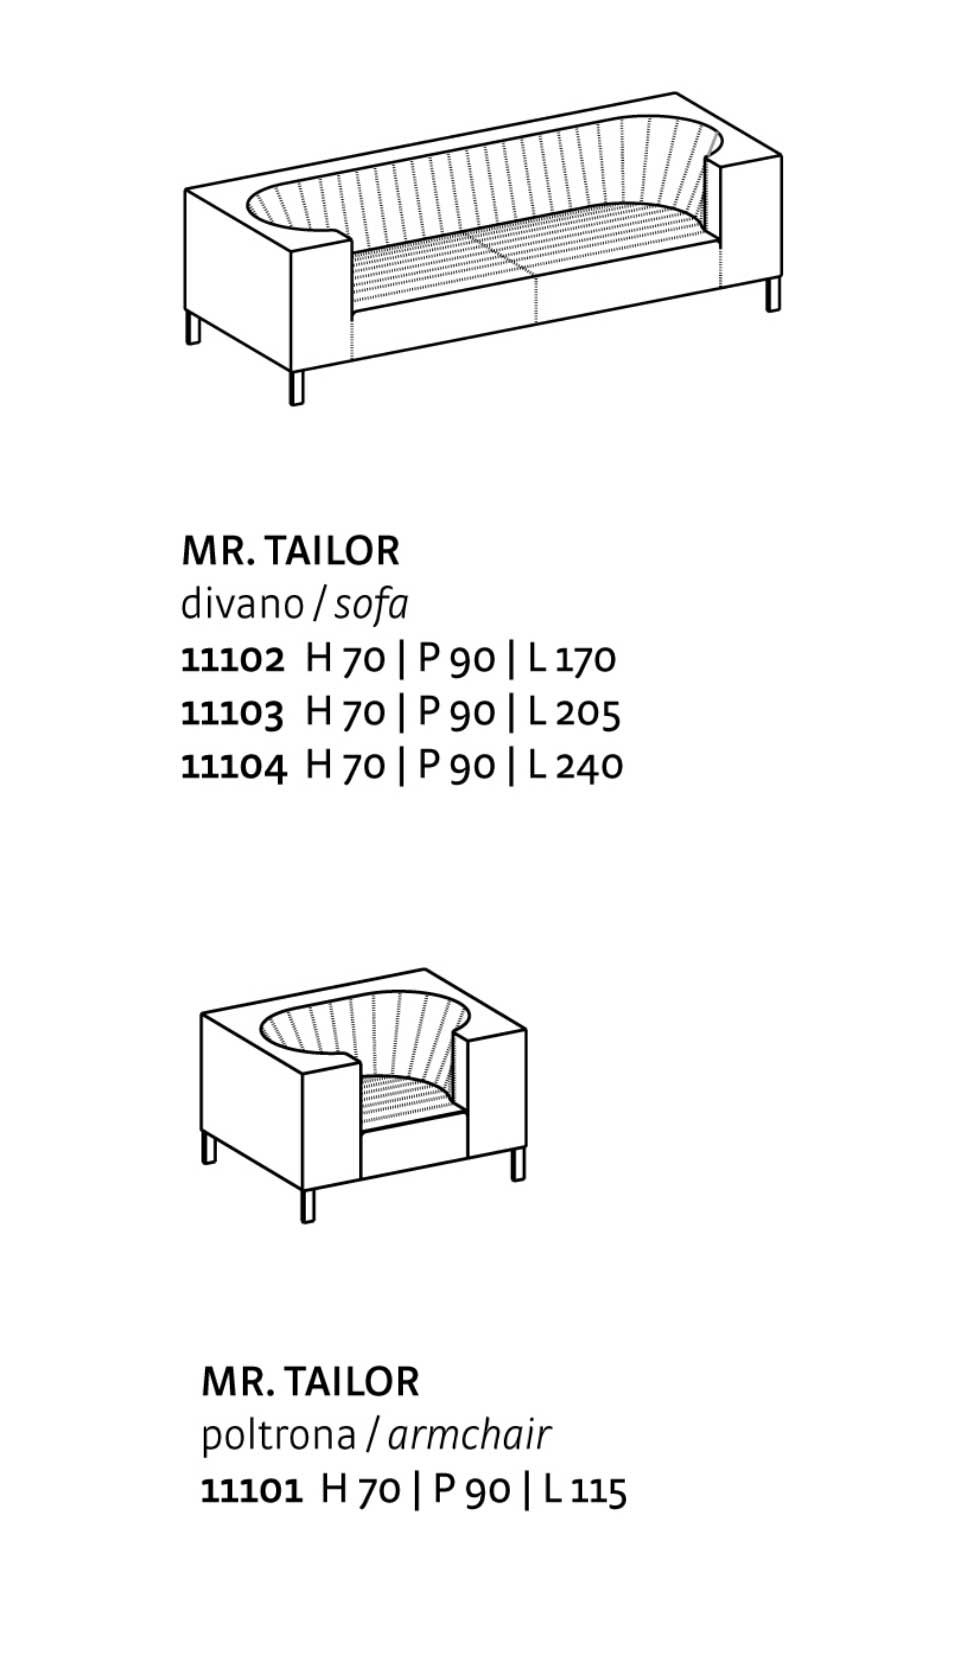 mr-tailor-data-sheet